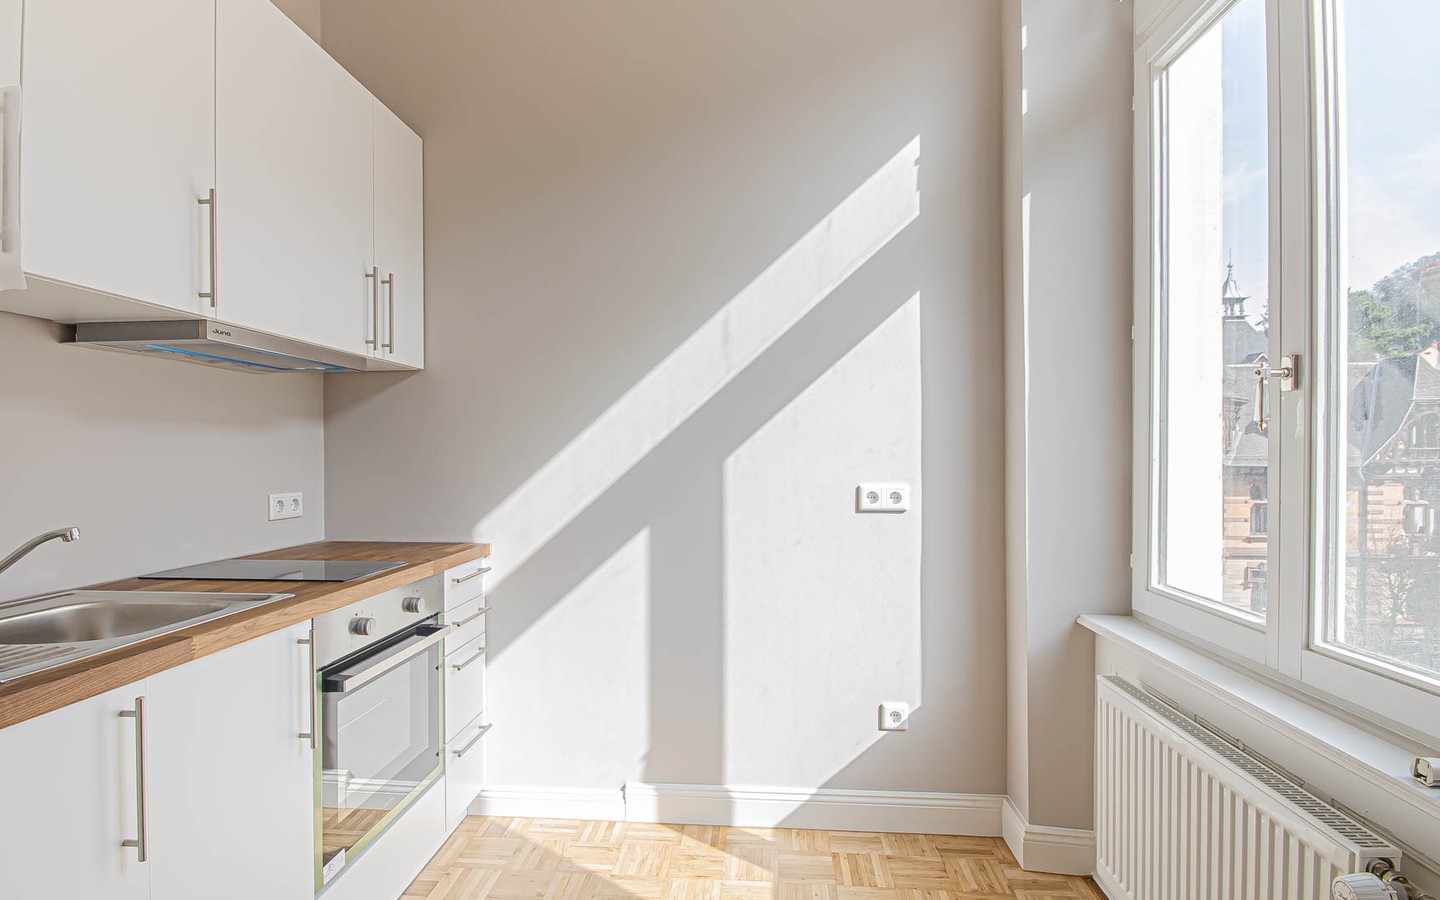 Küche - Exklusives Einzimmerappartement in zentraler Lage
Erstbezug nach Sanierung